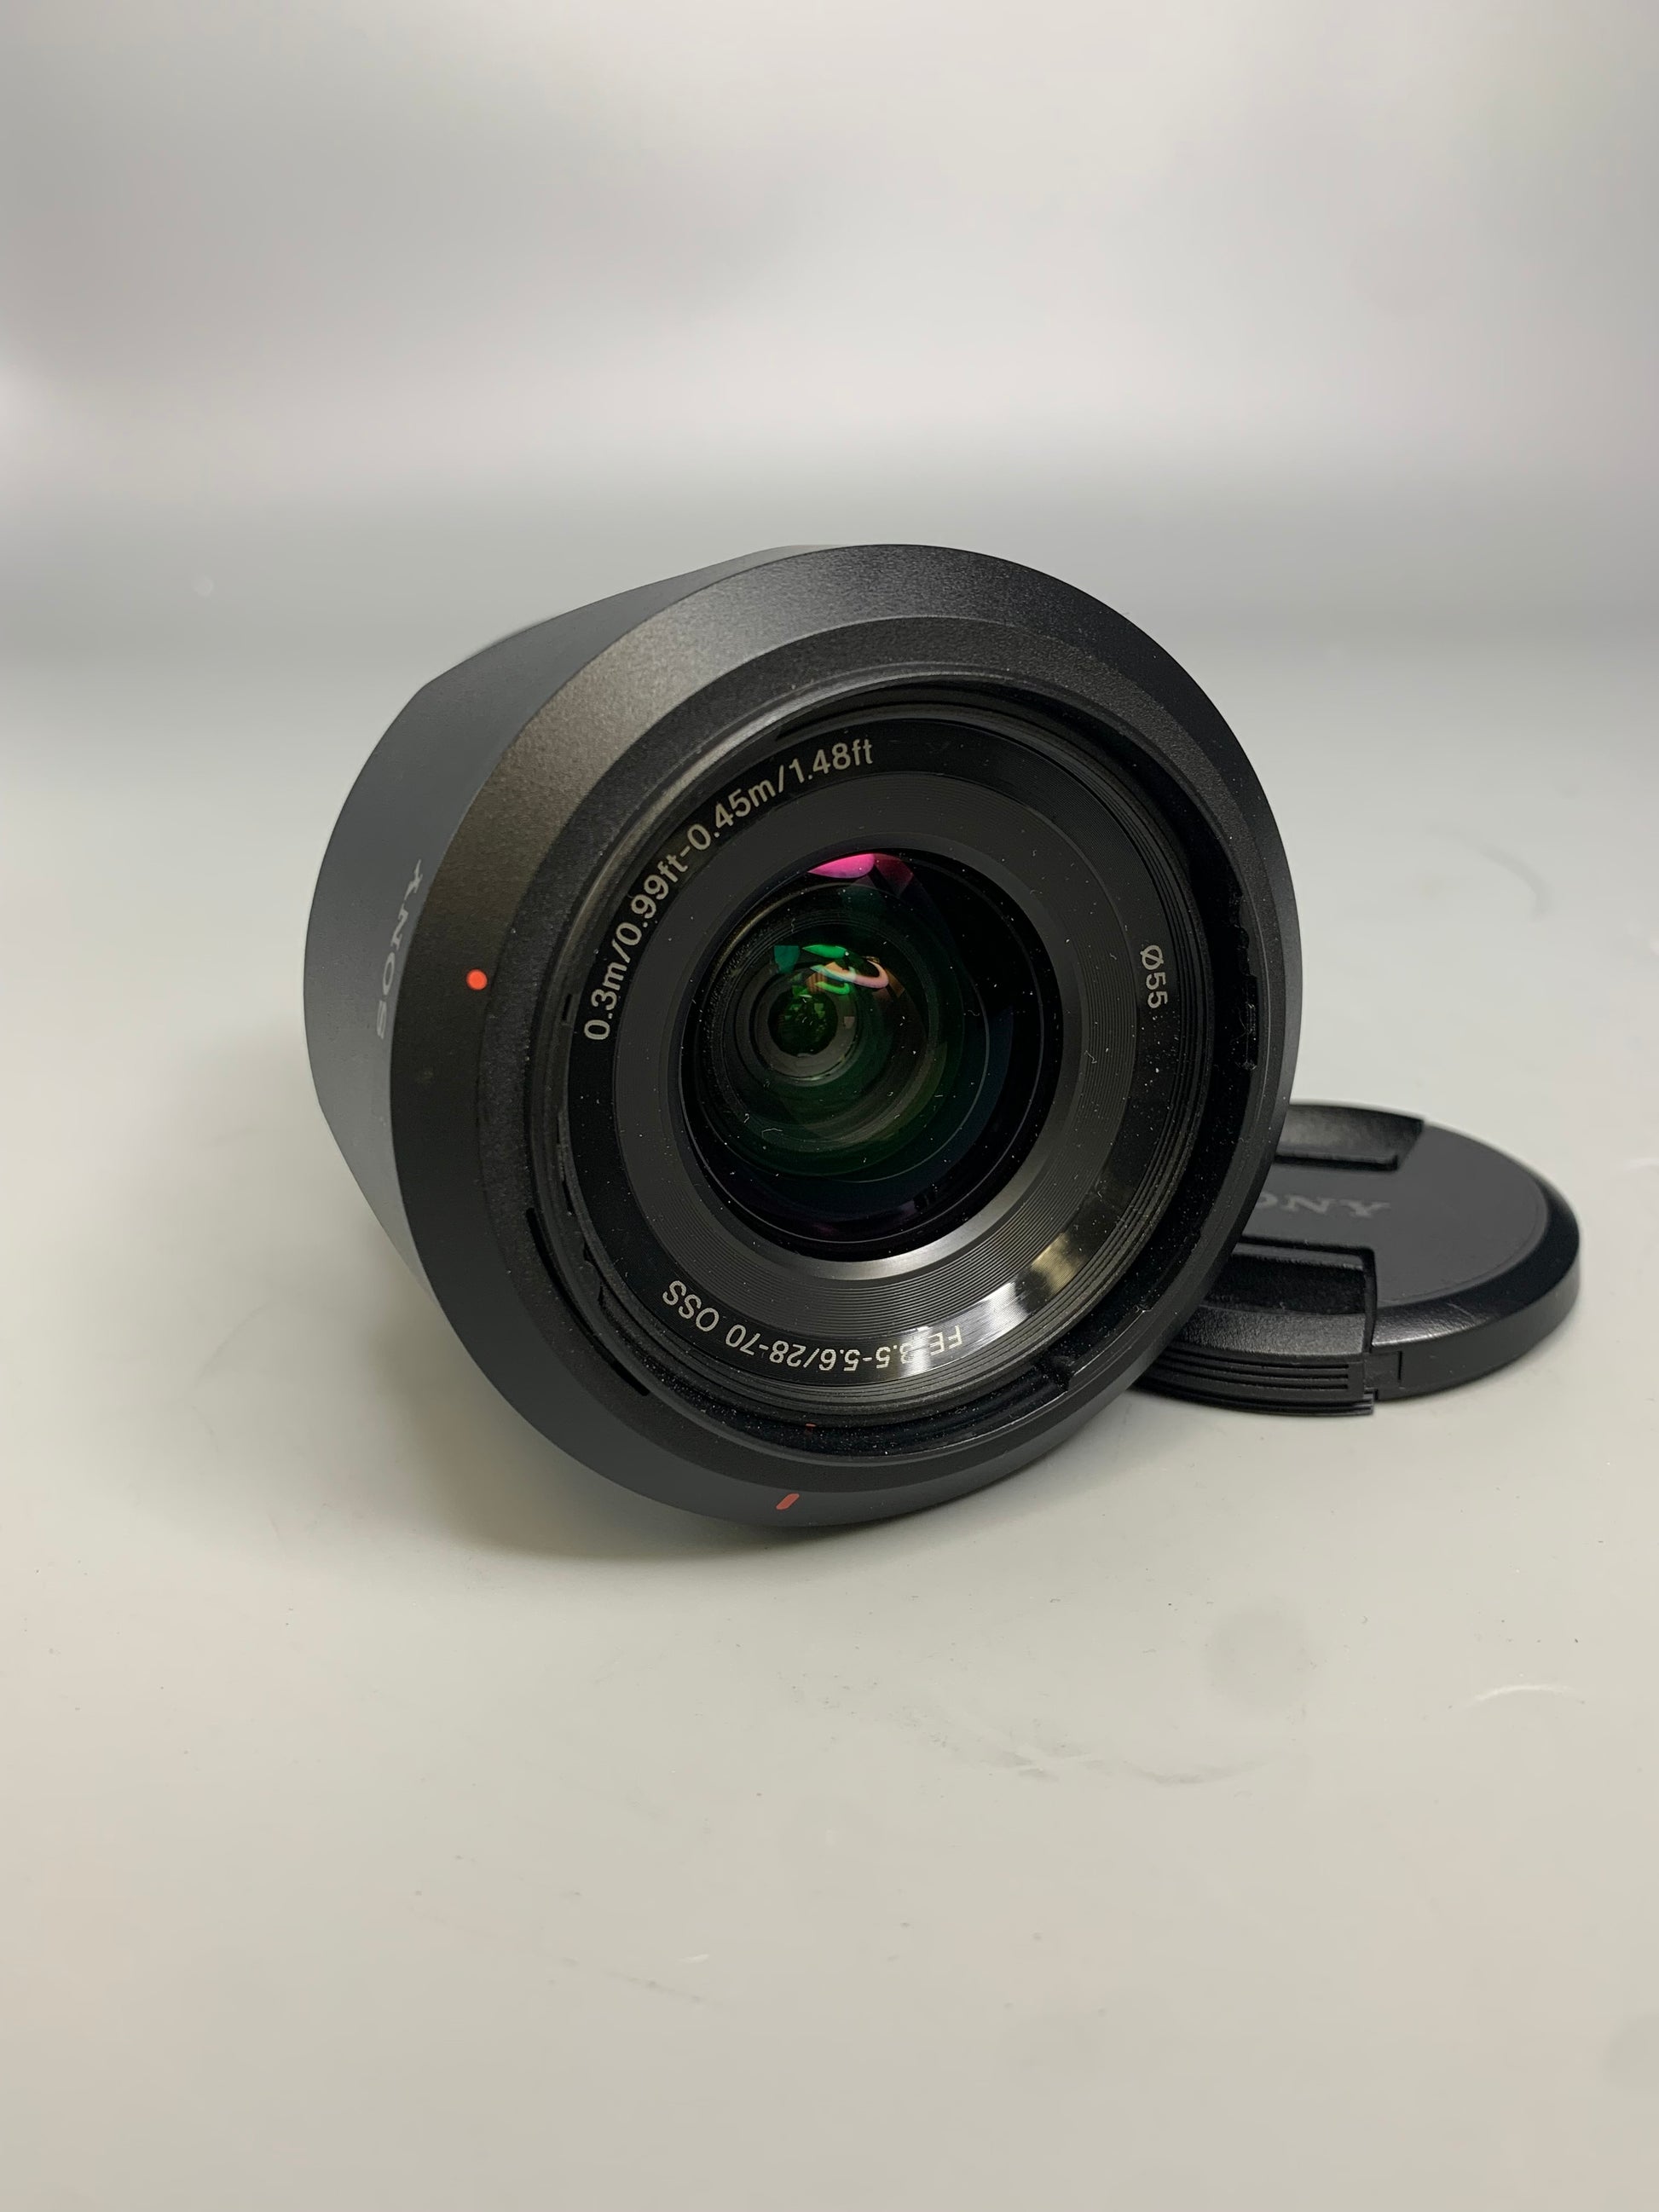 Sony SEL2870/0934722 FE 28-70mm f/3.5-5.6 OSS Lens, Pre-Owned.